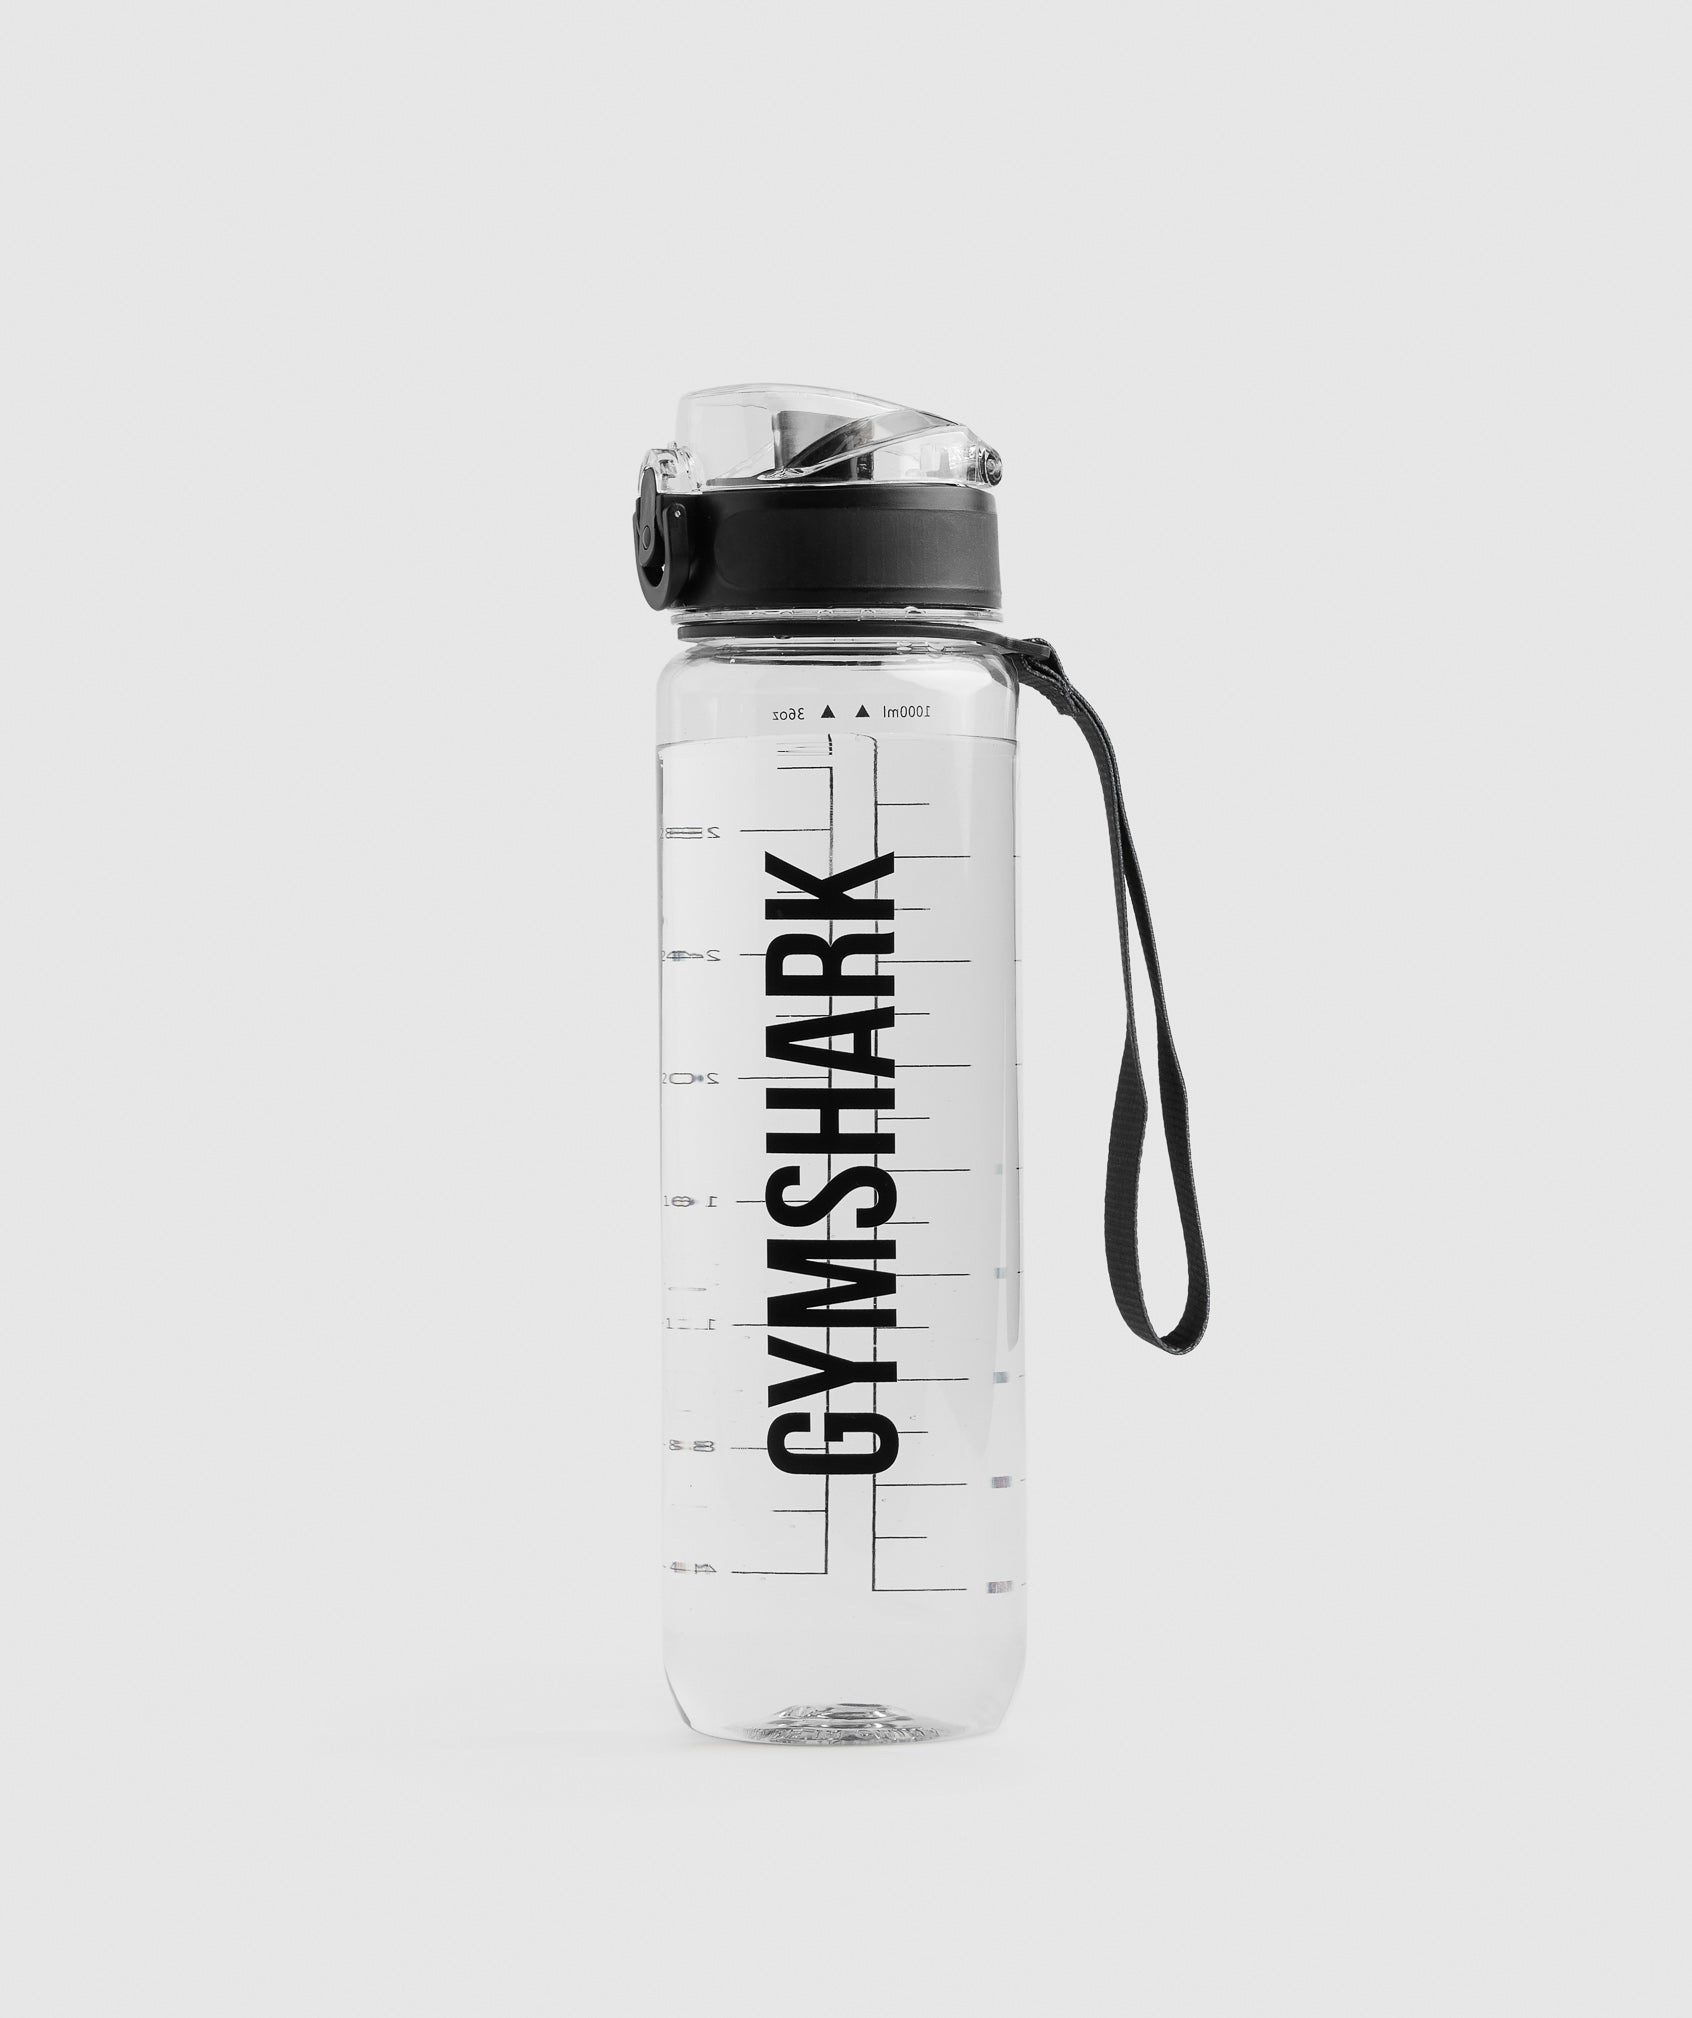 Gymshark 1L Water Bottle - Raspberry Pink